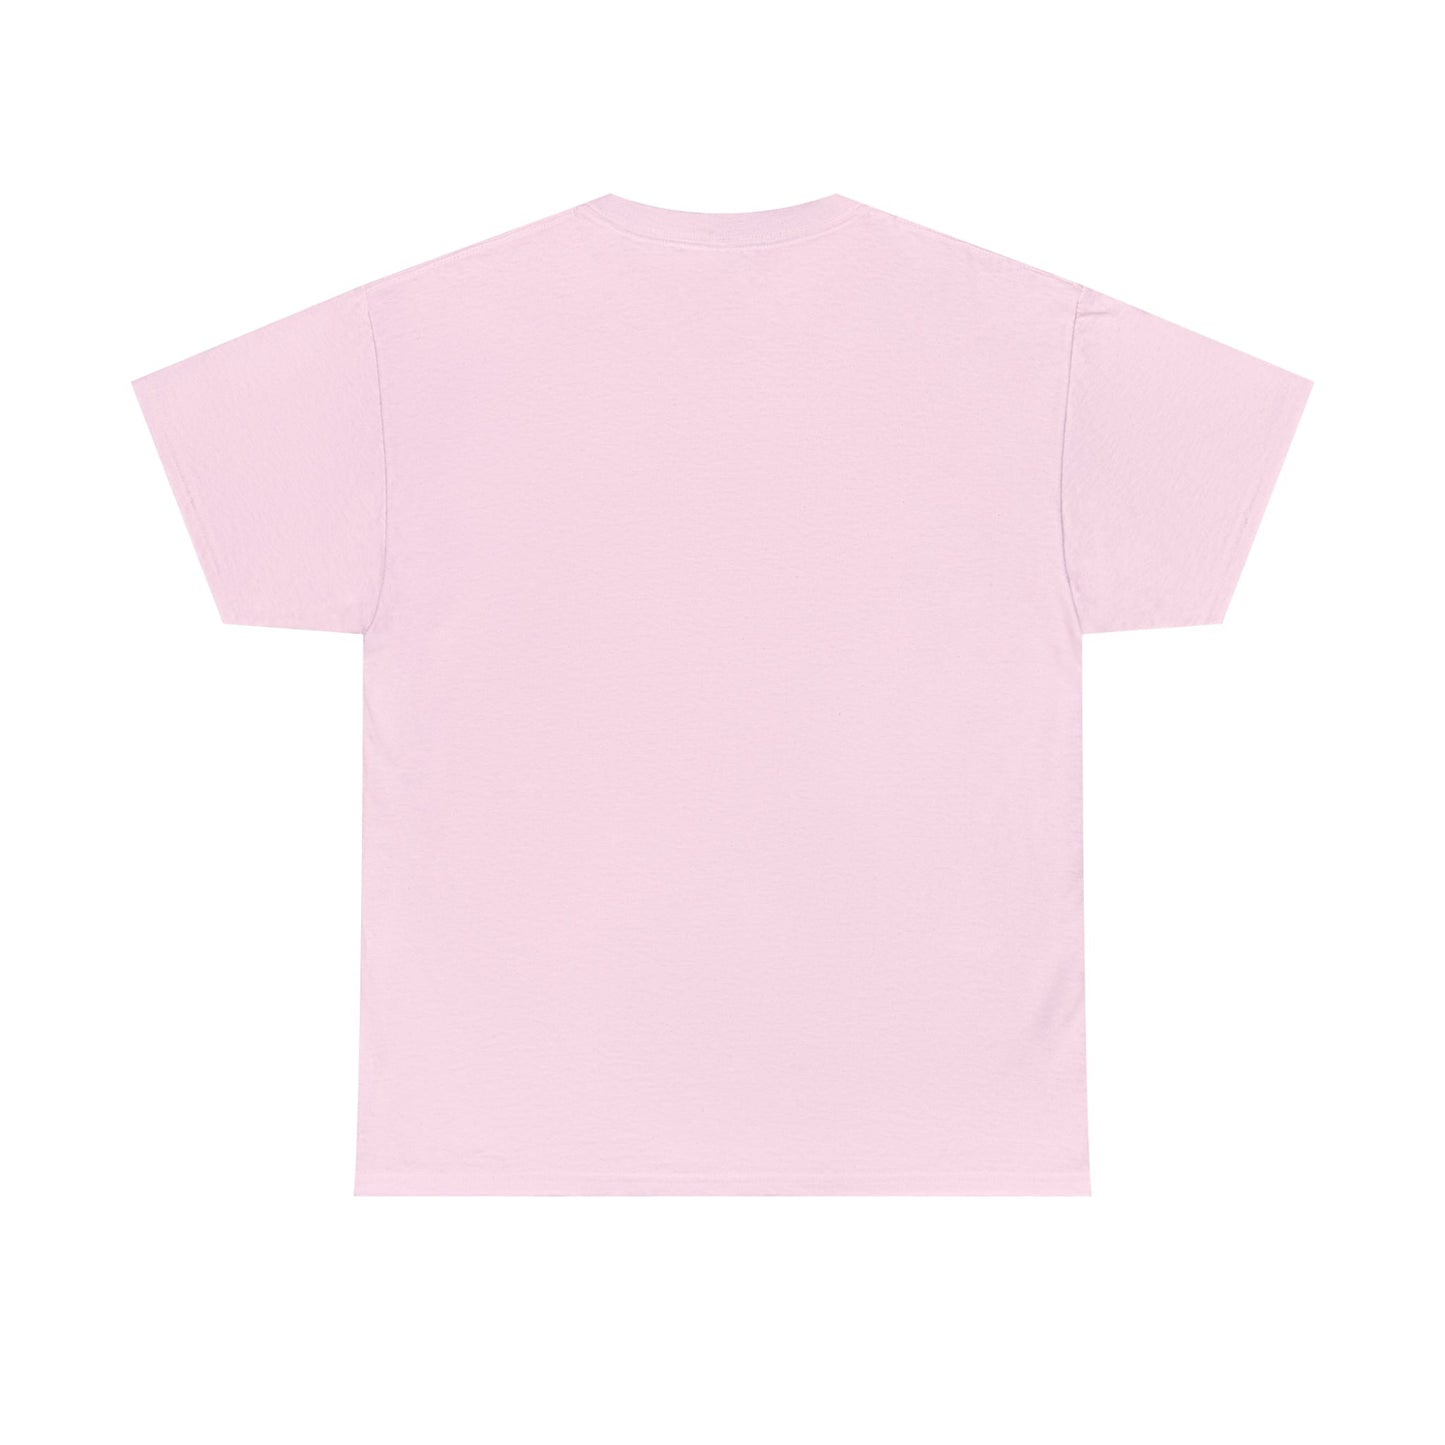 T-Shirt Basic - Femme - Collection "Aponévrose" (530) - Le Traileur Anonyme